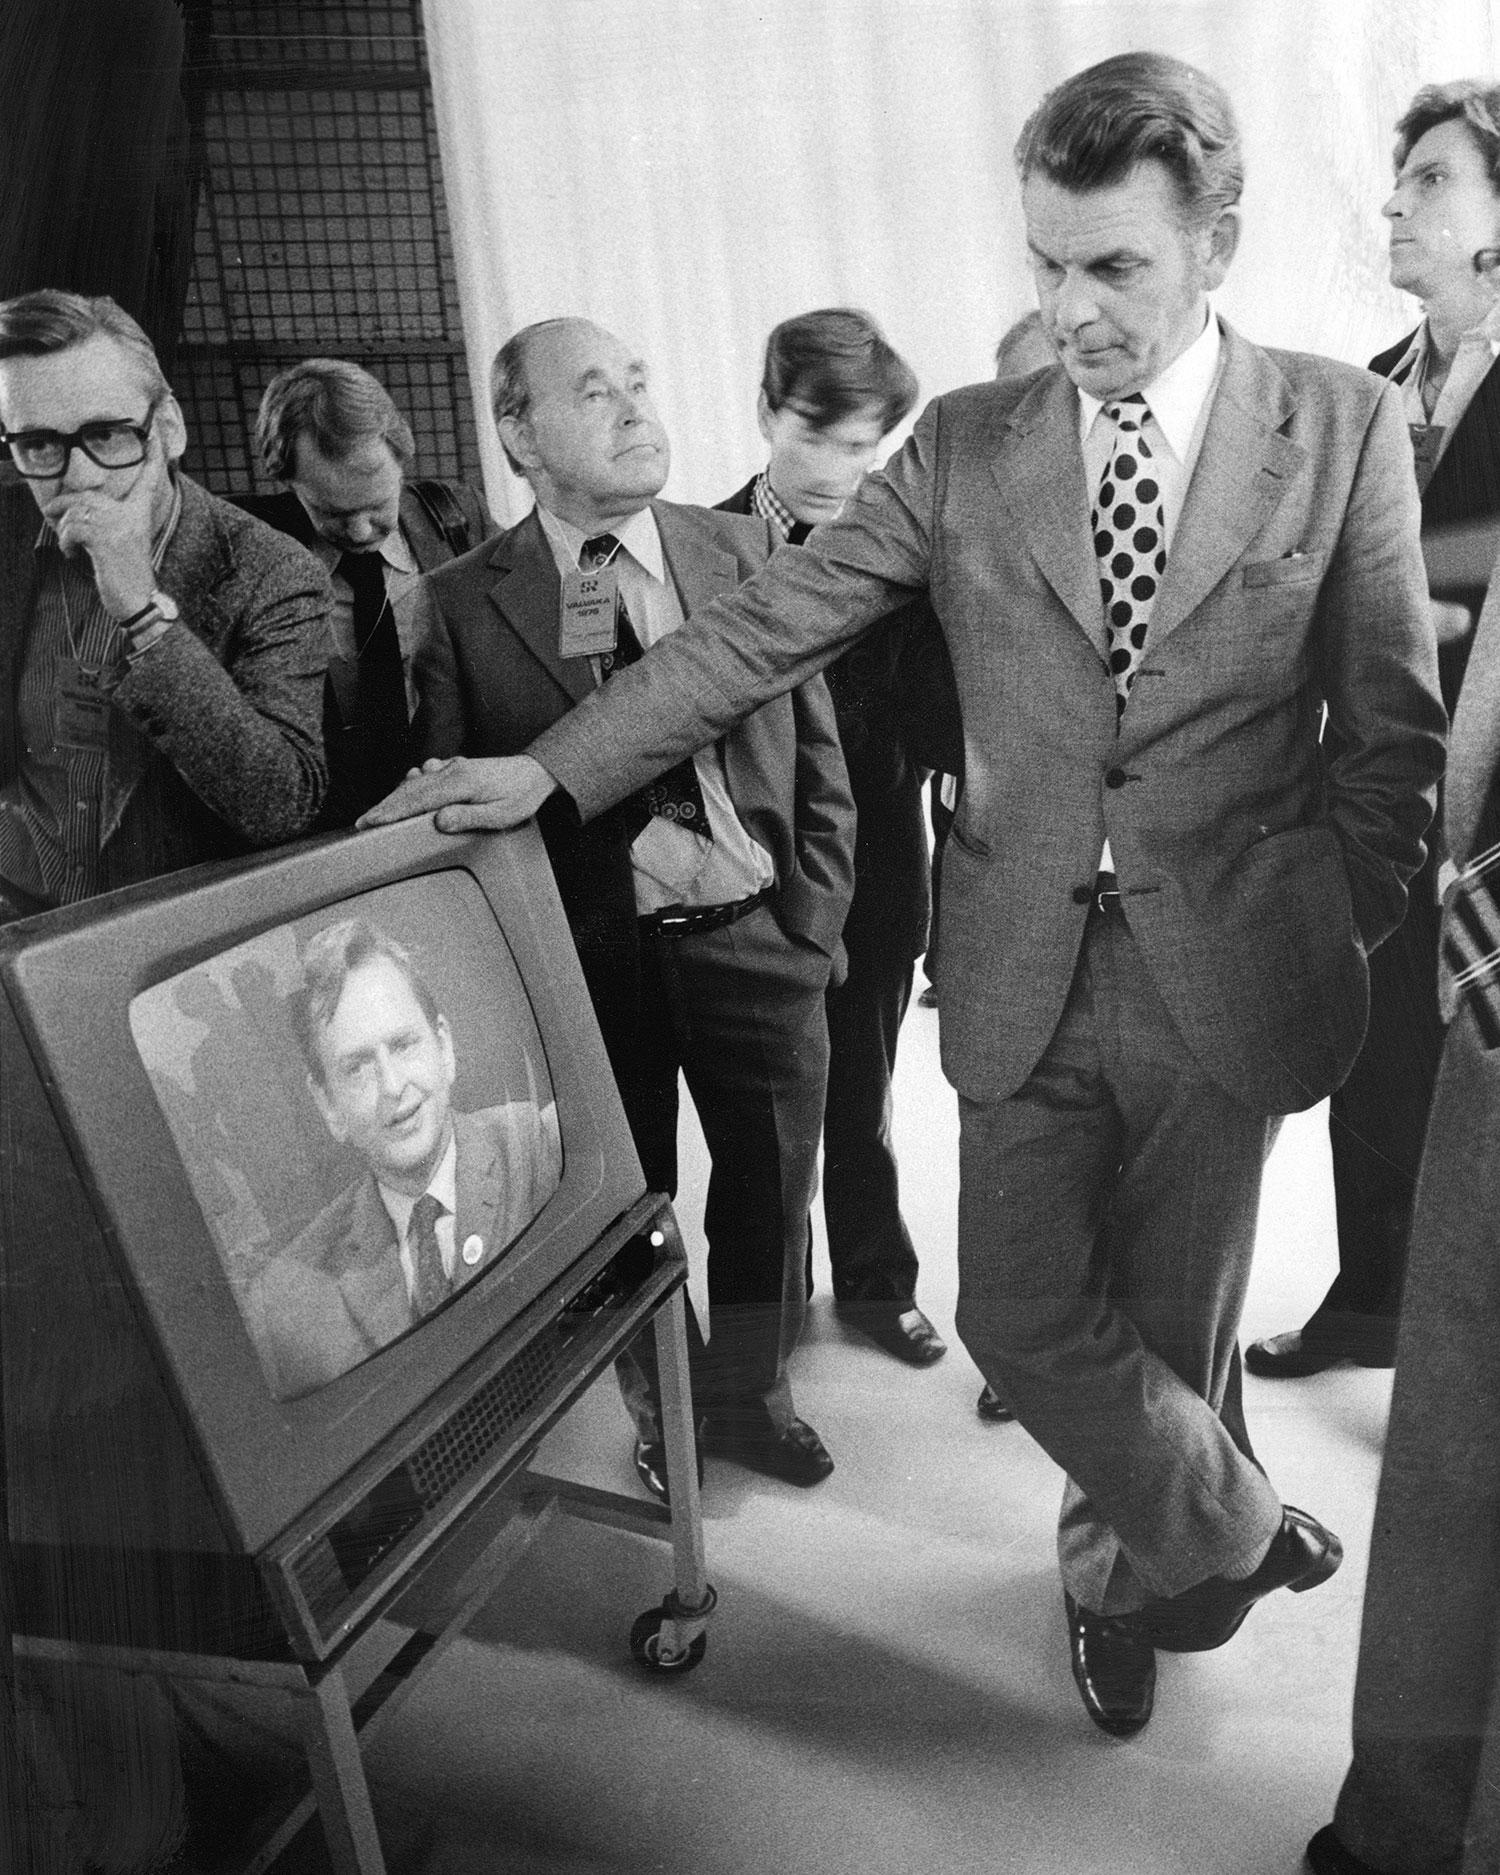 Riksdagsvalet 1976. Thorbjörn Fälldin segrade i valet och ser Olof Palme på tv där han erkänner sig besegrad.